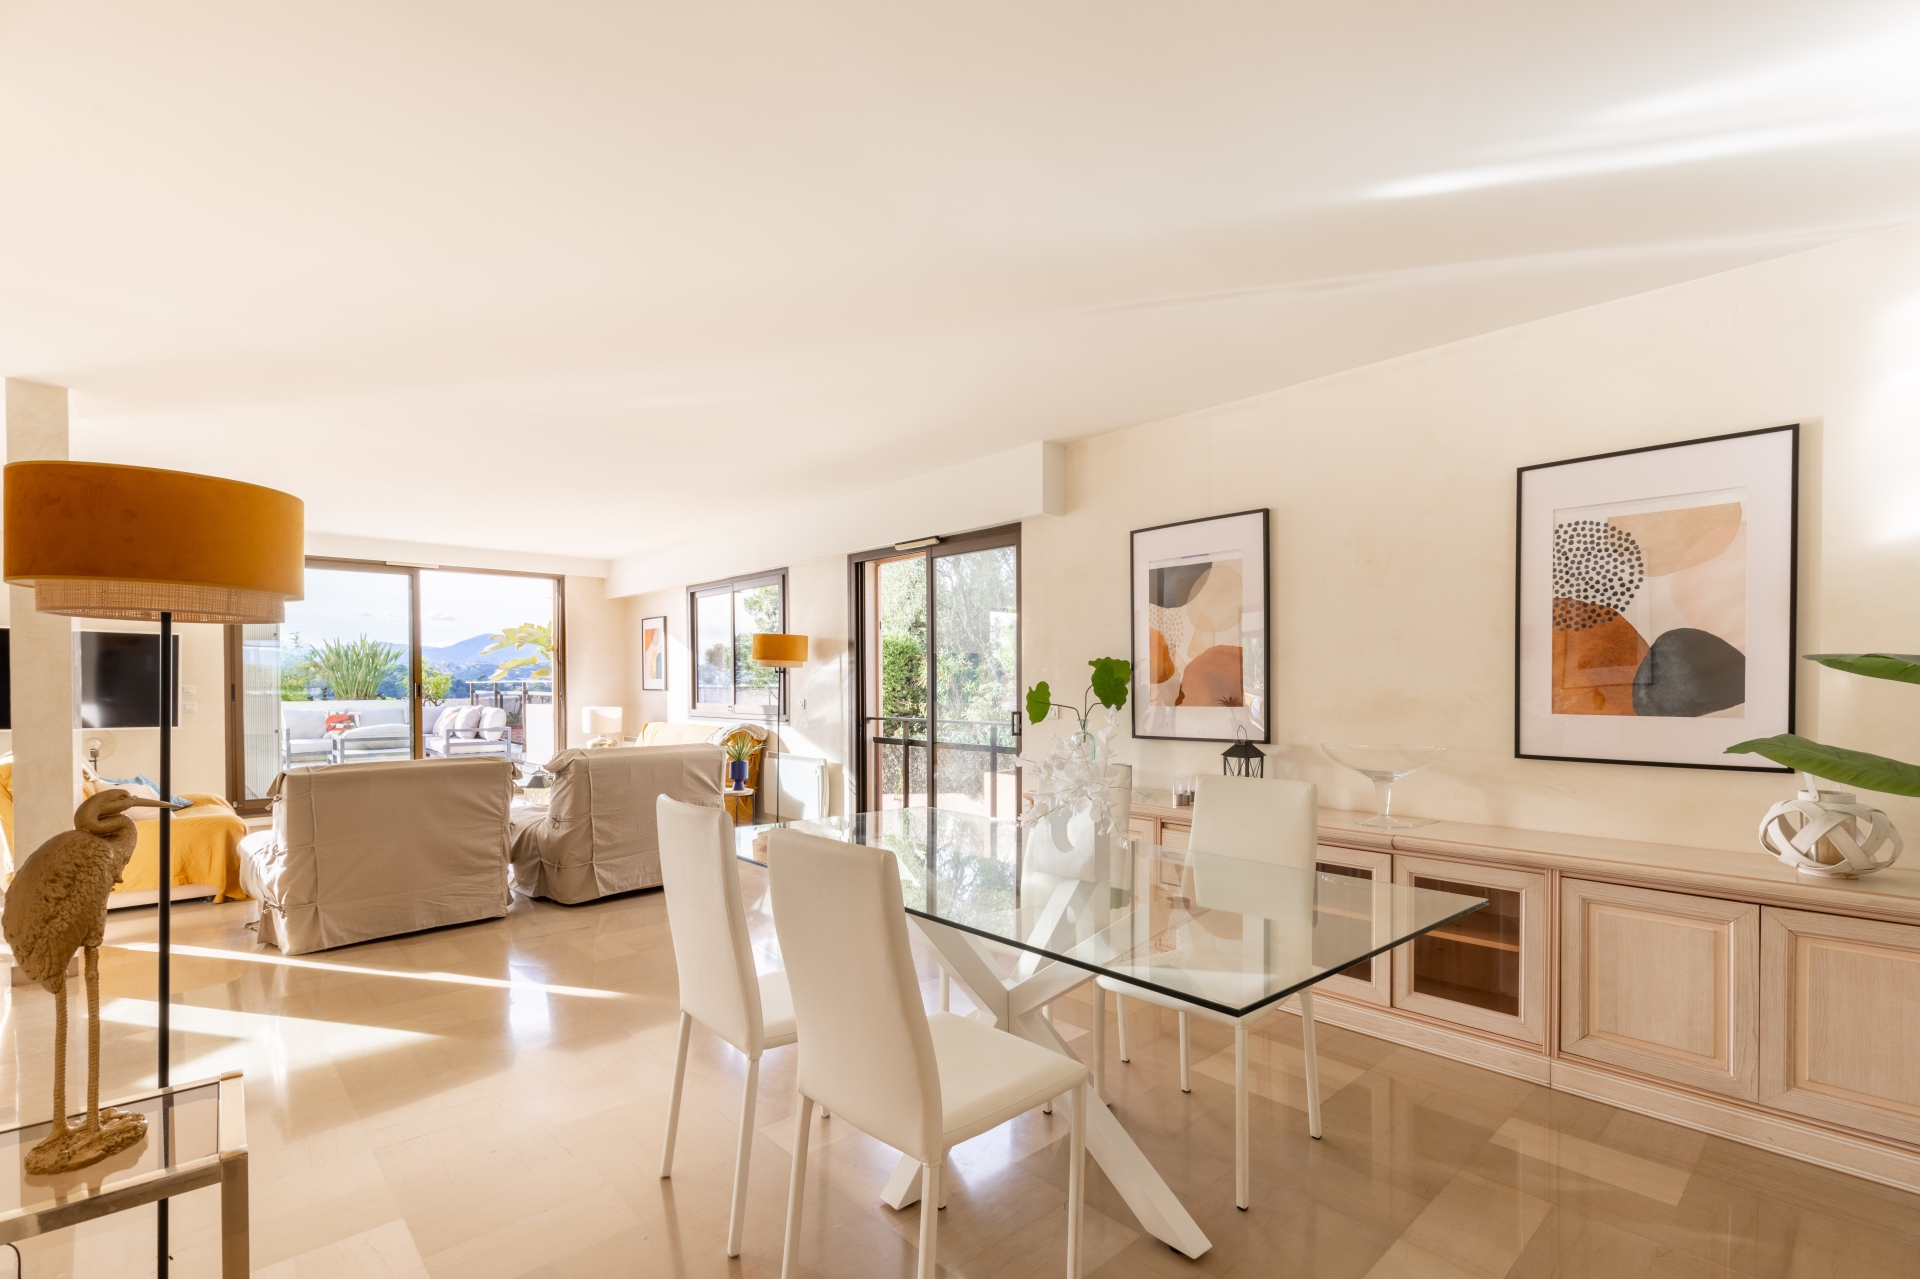 Dotta Appartement de 5 pieces a vendre - VILLA ANGELICO - Mont Boron - Nice - imghdr